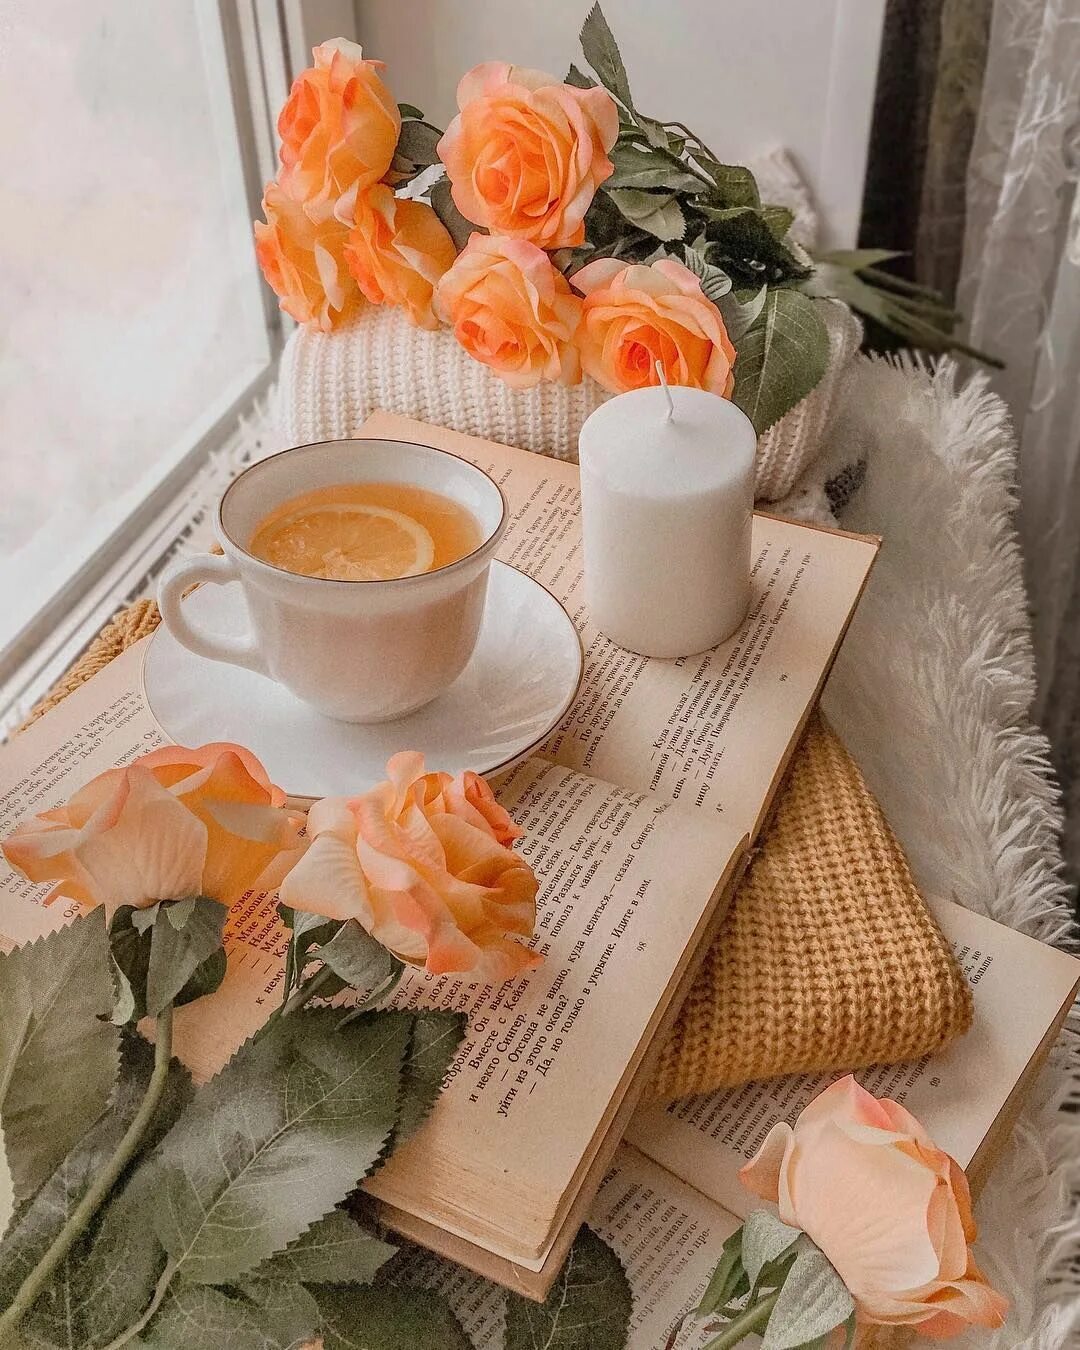 Тепла и уюта в сердце. Кофе и цветы. Завтрак цветы. Завтрак с цветами. Утро цветы.